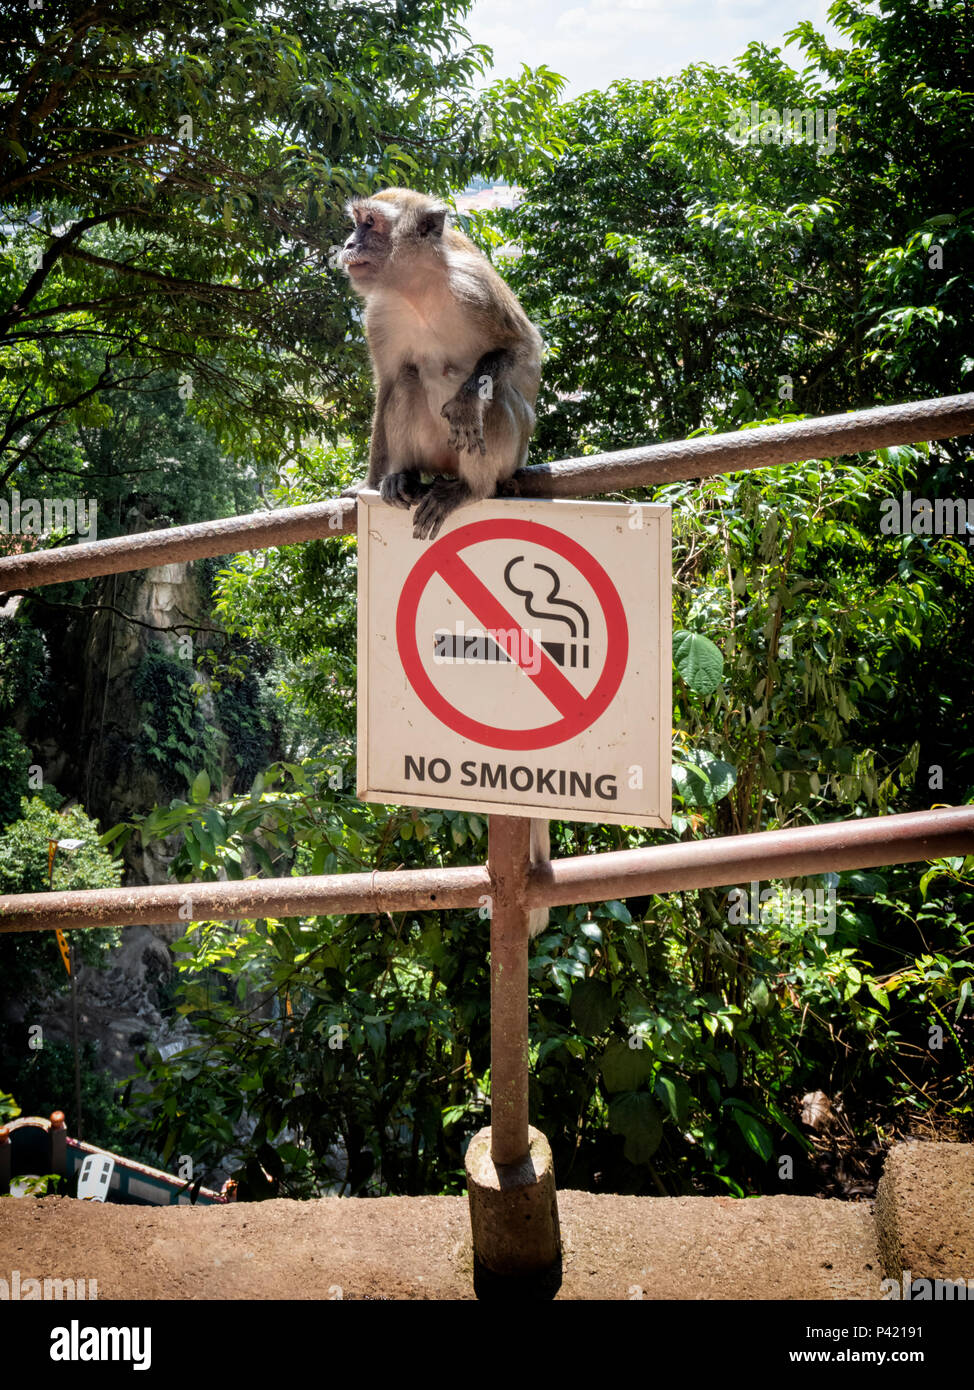 Les jeunes macaques à longue queue assis sur d'interdiction de fumer dans les grottes de Batu, Selangor, Malaisie Banque D'Images